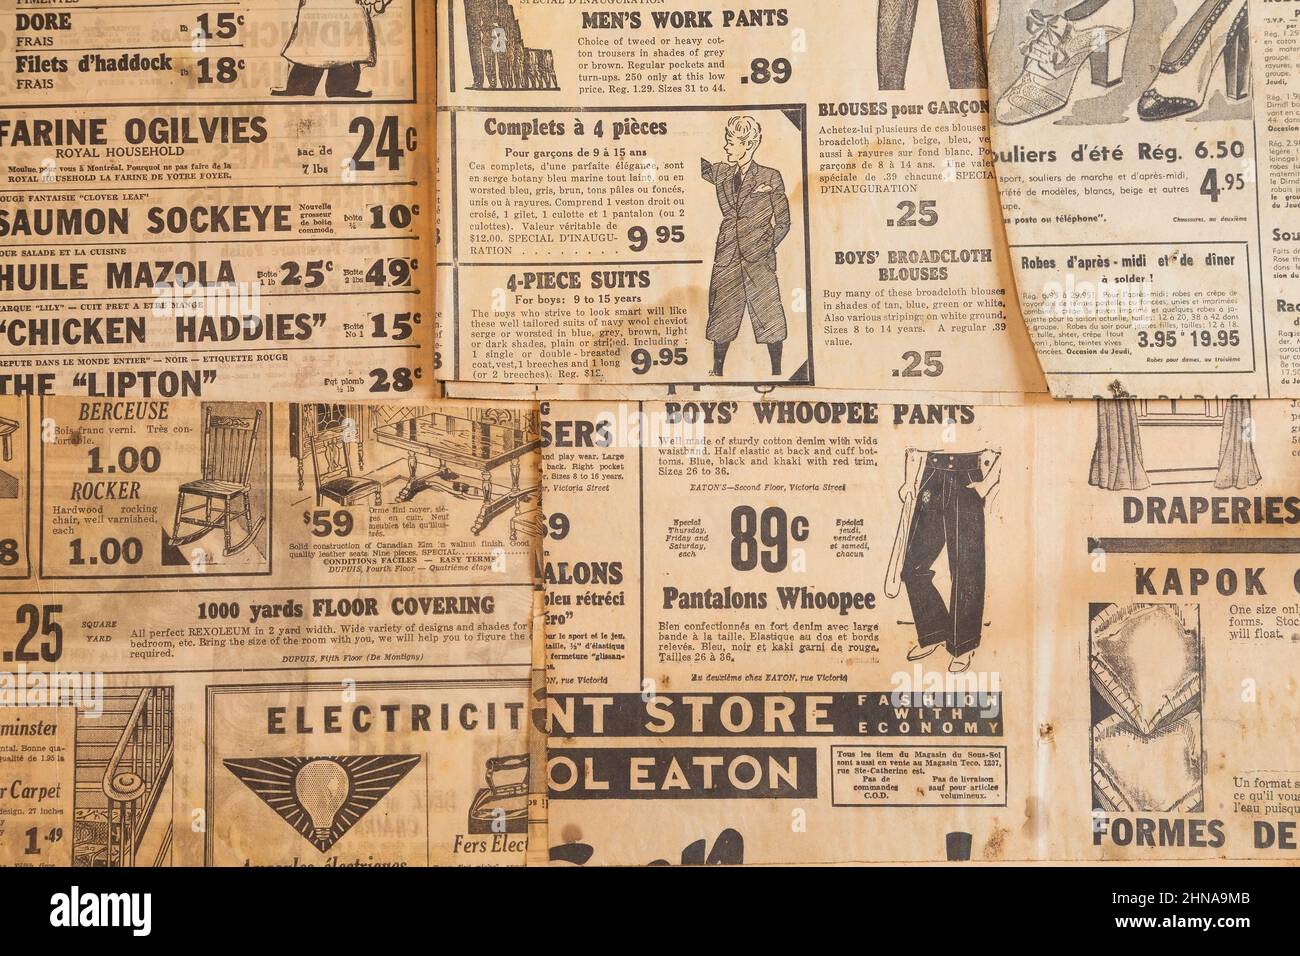 Annunci di abbigliamento e prodotti bilingue in francese e inglese stampati su vecchi giornali del 1930s, 40s, 50s. Foto Stock